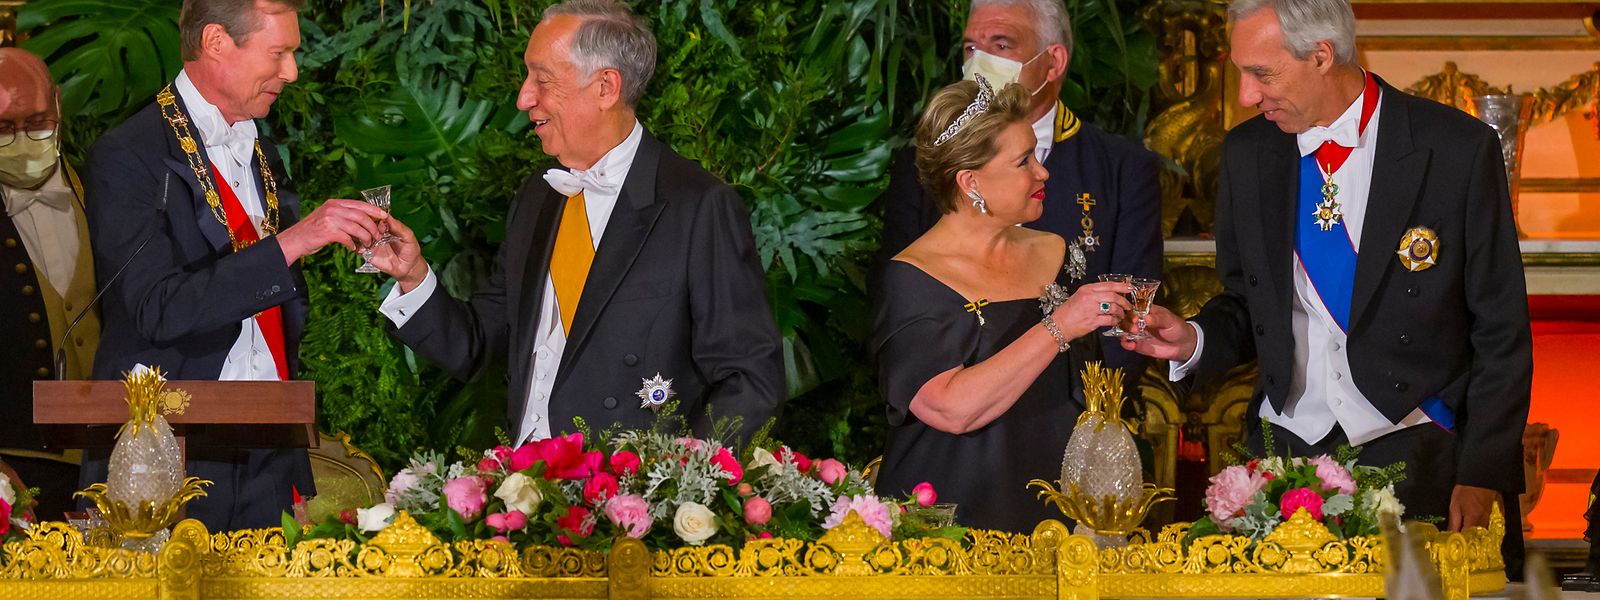 Großherzog Henri, Staatspräsident Marcelo Rebelo de Sousa, Großherzogin Maria Teresa, Außenminister João Gomes Cravinho.